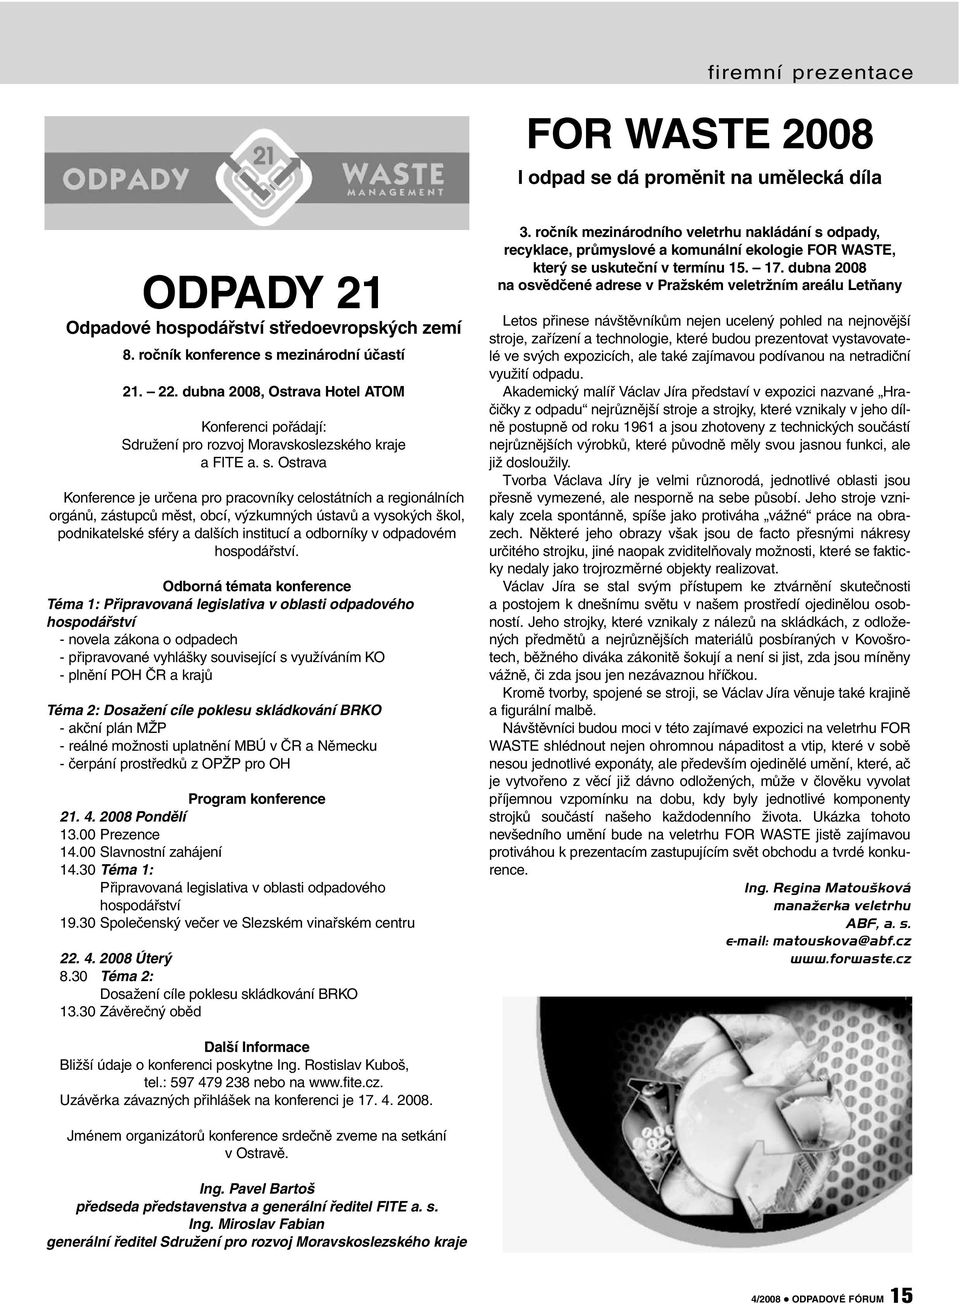 Ostrava Konference je určena pro pracovníky celostátních a regionálních orgánů, zástupců měst, obcí, výzkumných ústavů a vysokých škol, podnikatelské sféry a dalších institucí a odborníky v odpadovém